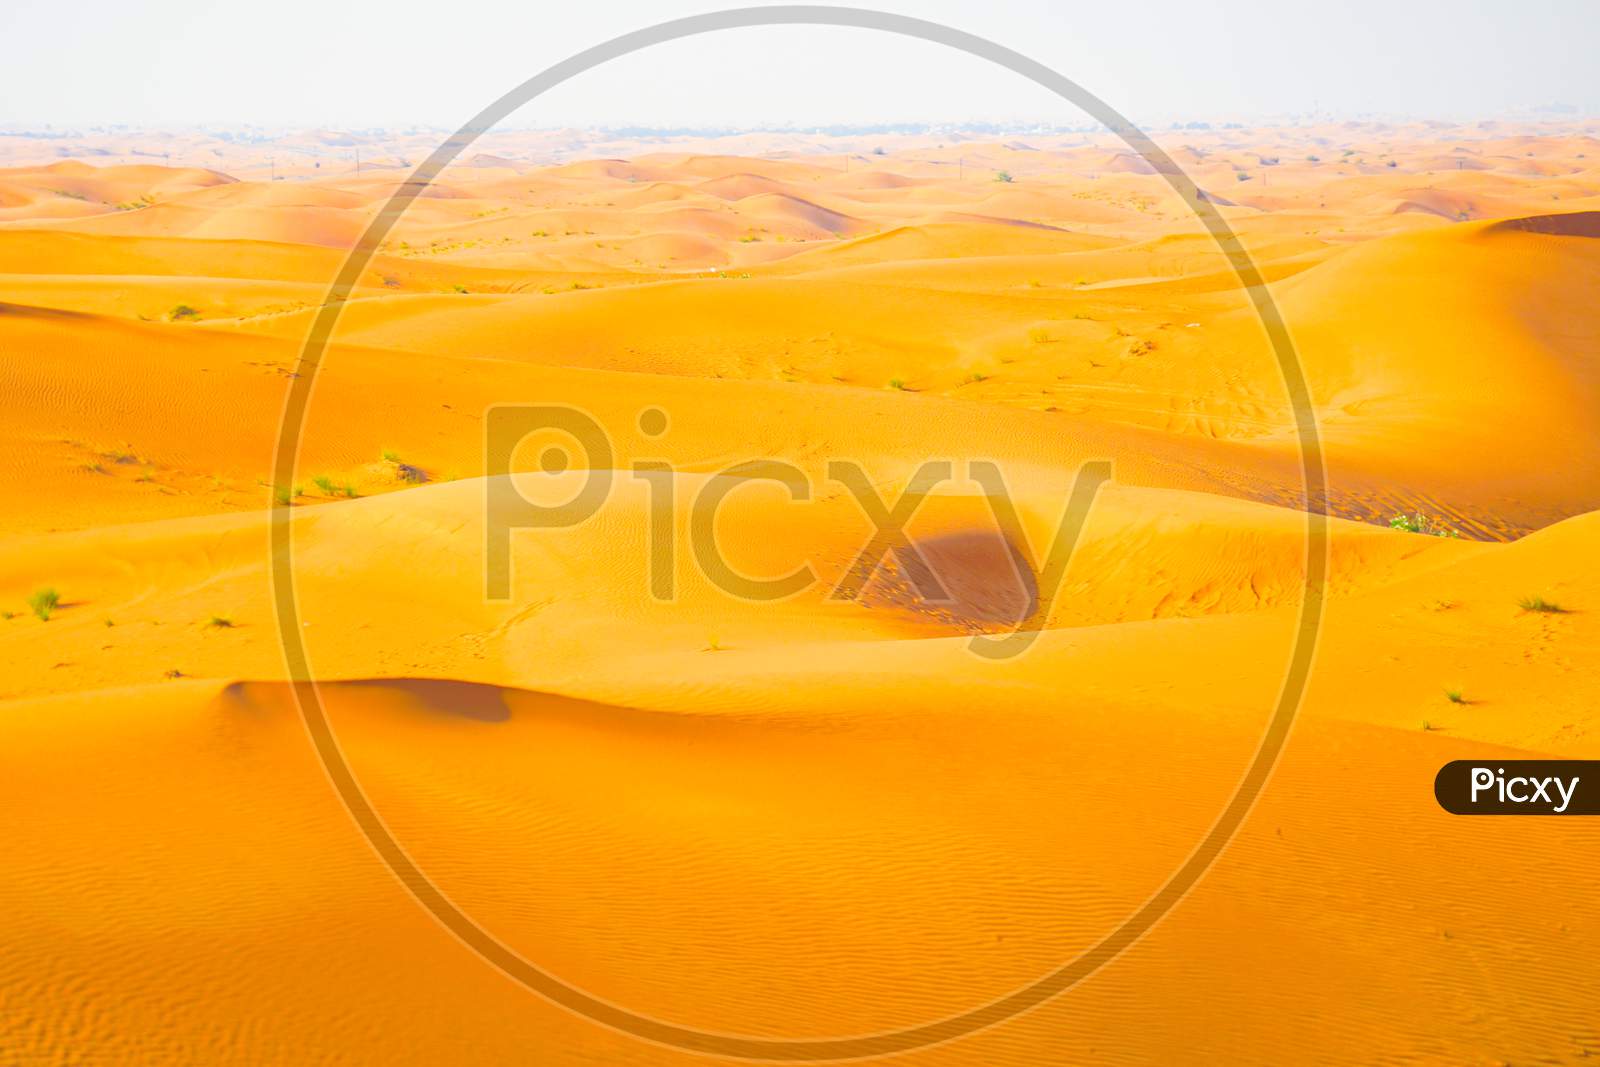 Arabian Desert Image